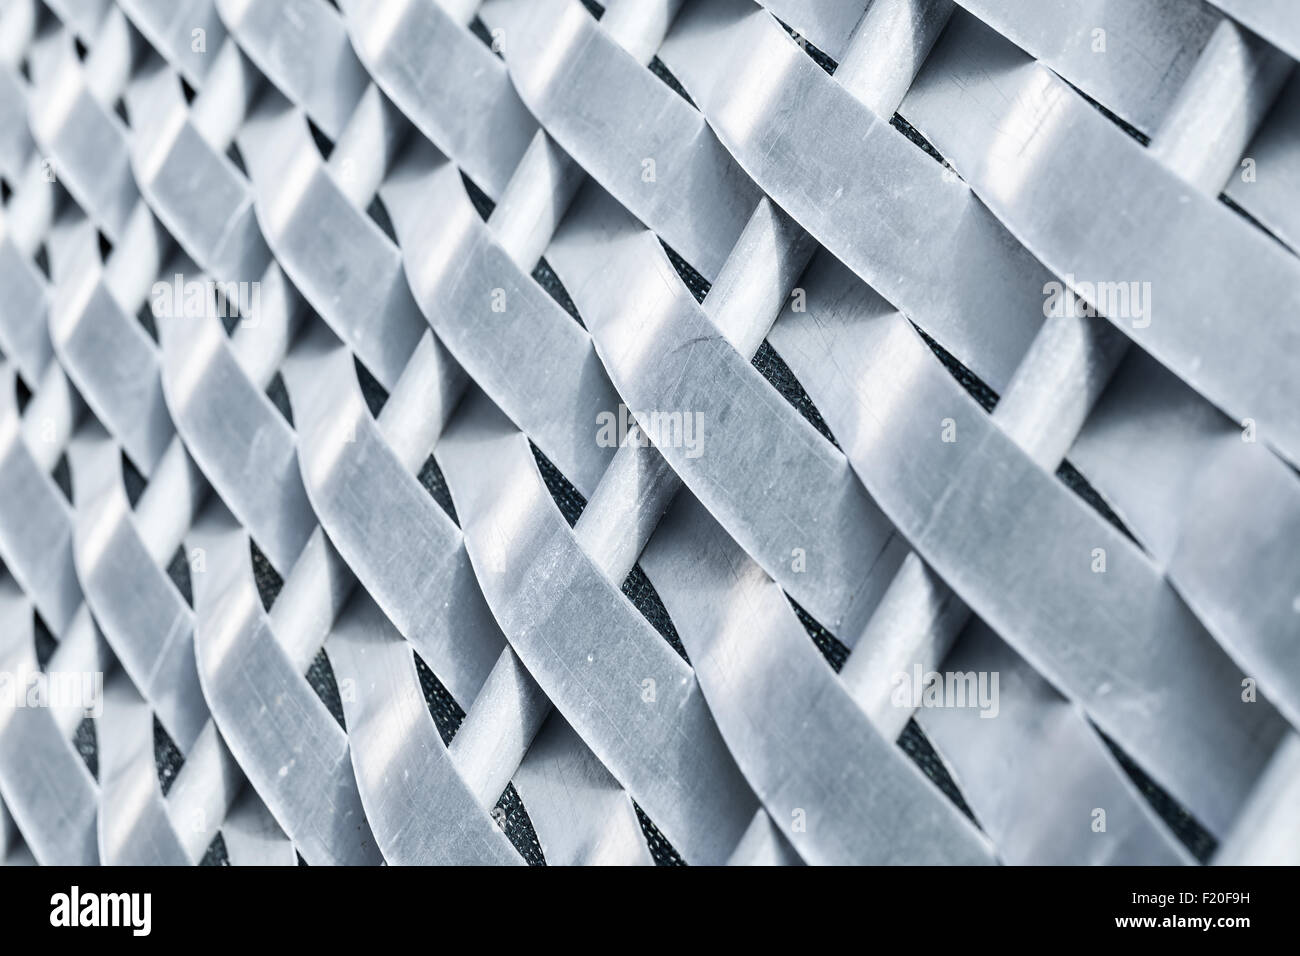 Metall geflochtenen Zaun gemacht aus Stahlstäben und Streifen, Nahaufnahme Foto mit selektiven Fokus Stockfoto